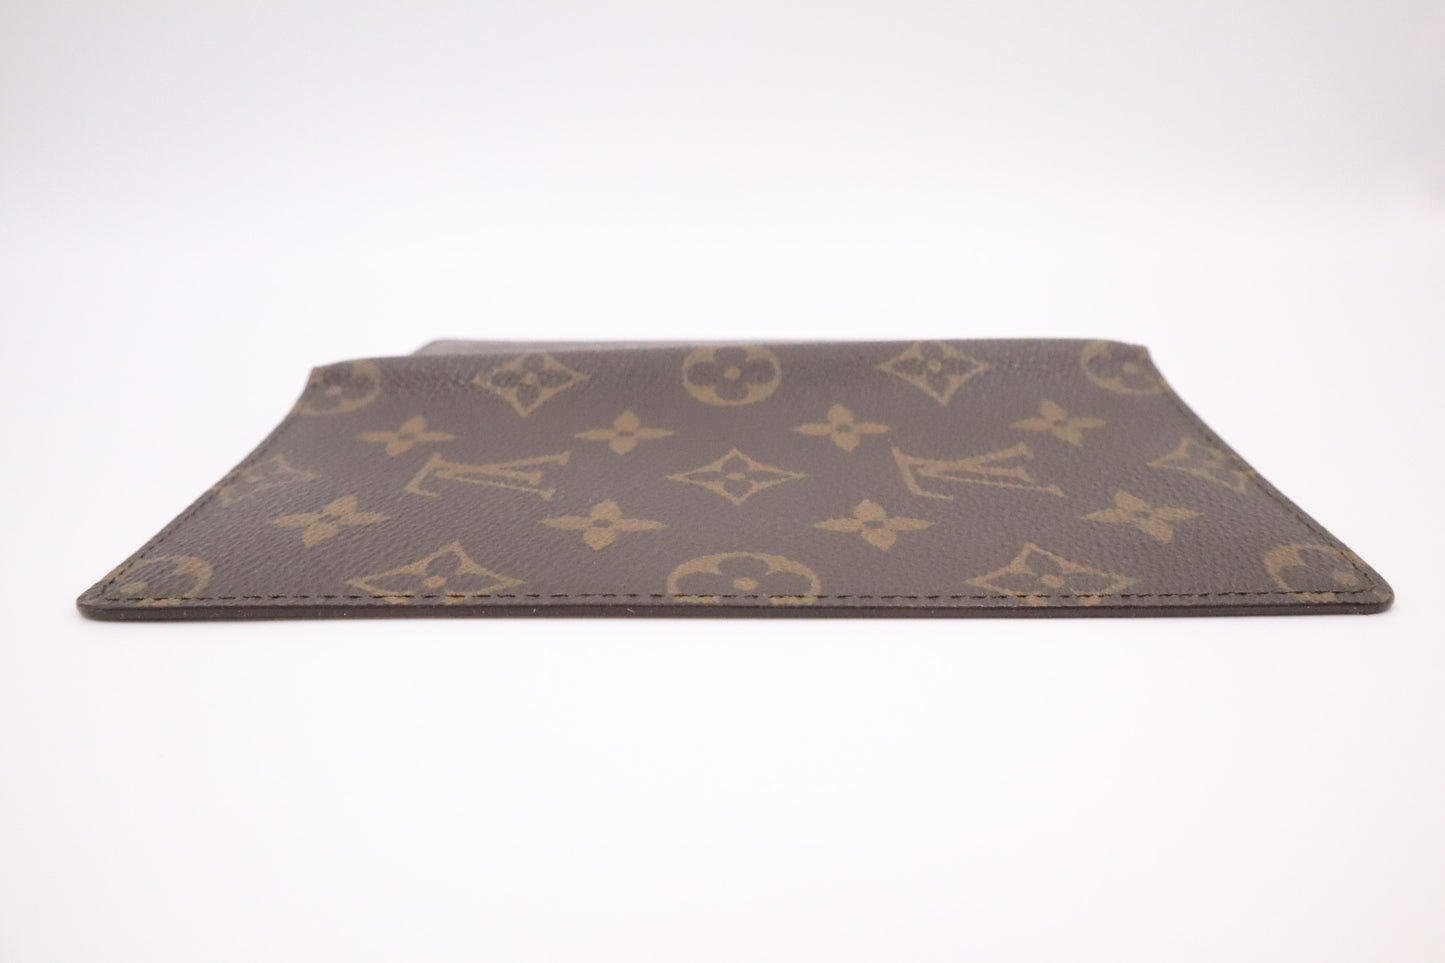 Louis Vuitton Checkbook Holder in Monogram Canvas